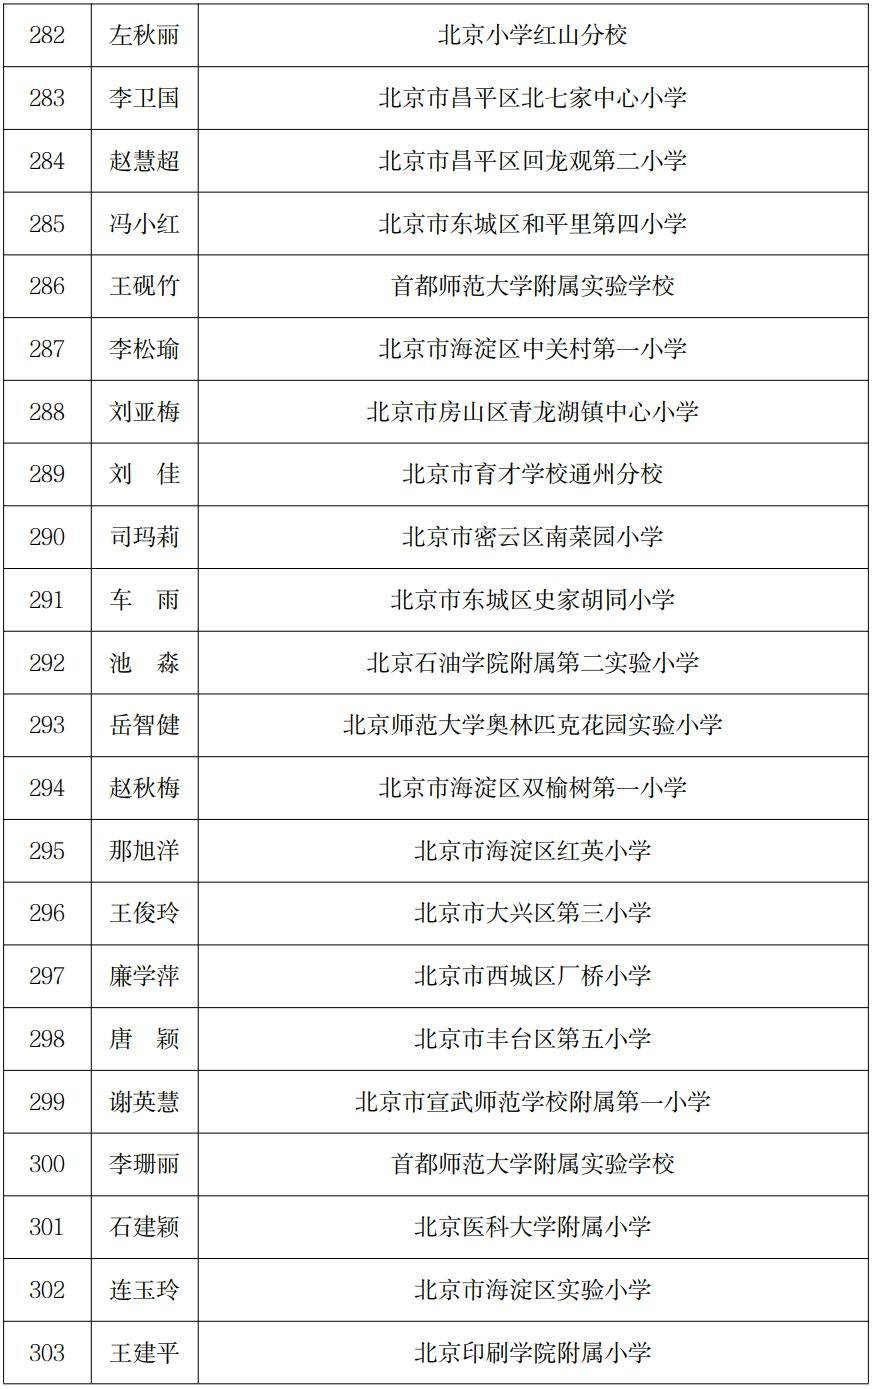 (注:排名不分先后顺序)2023年北京市中小学学骨干班主任公示名单共497